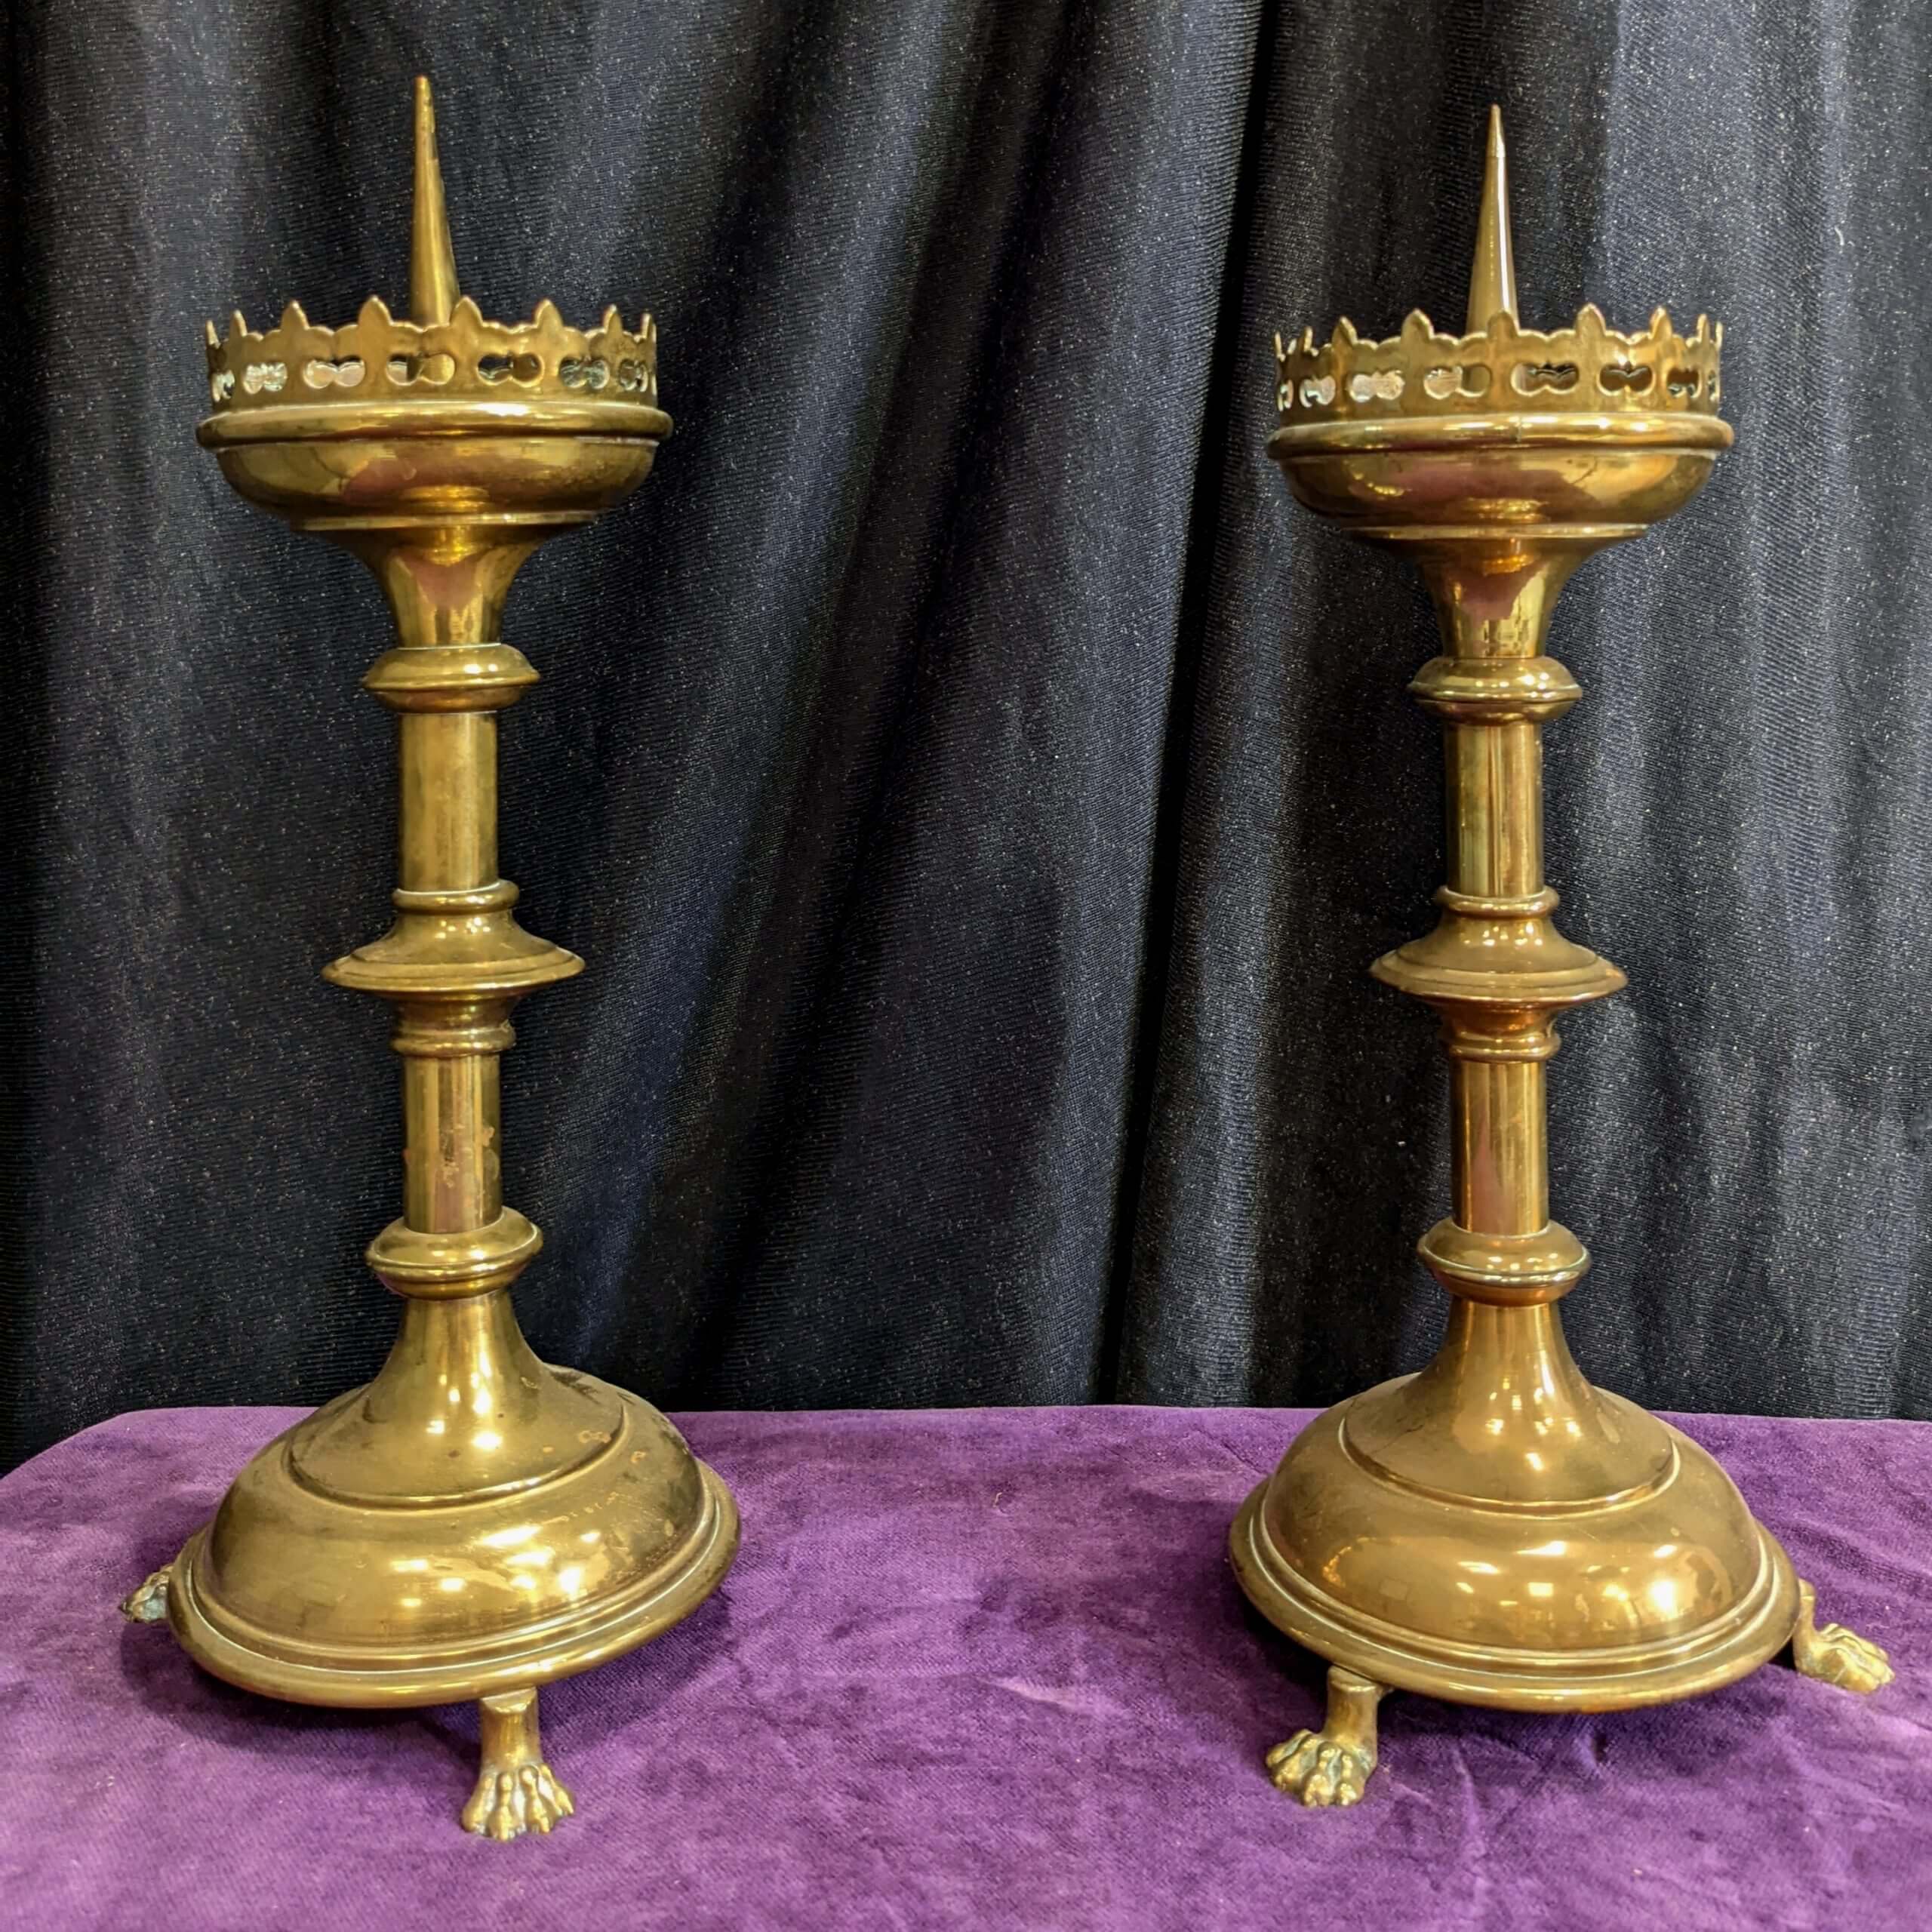 18th century brass altar pricket candlesticks